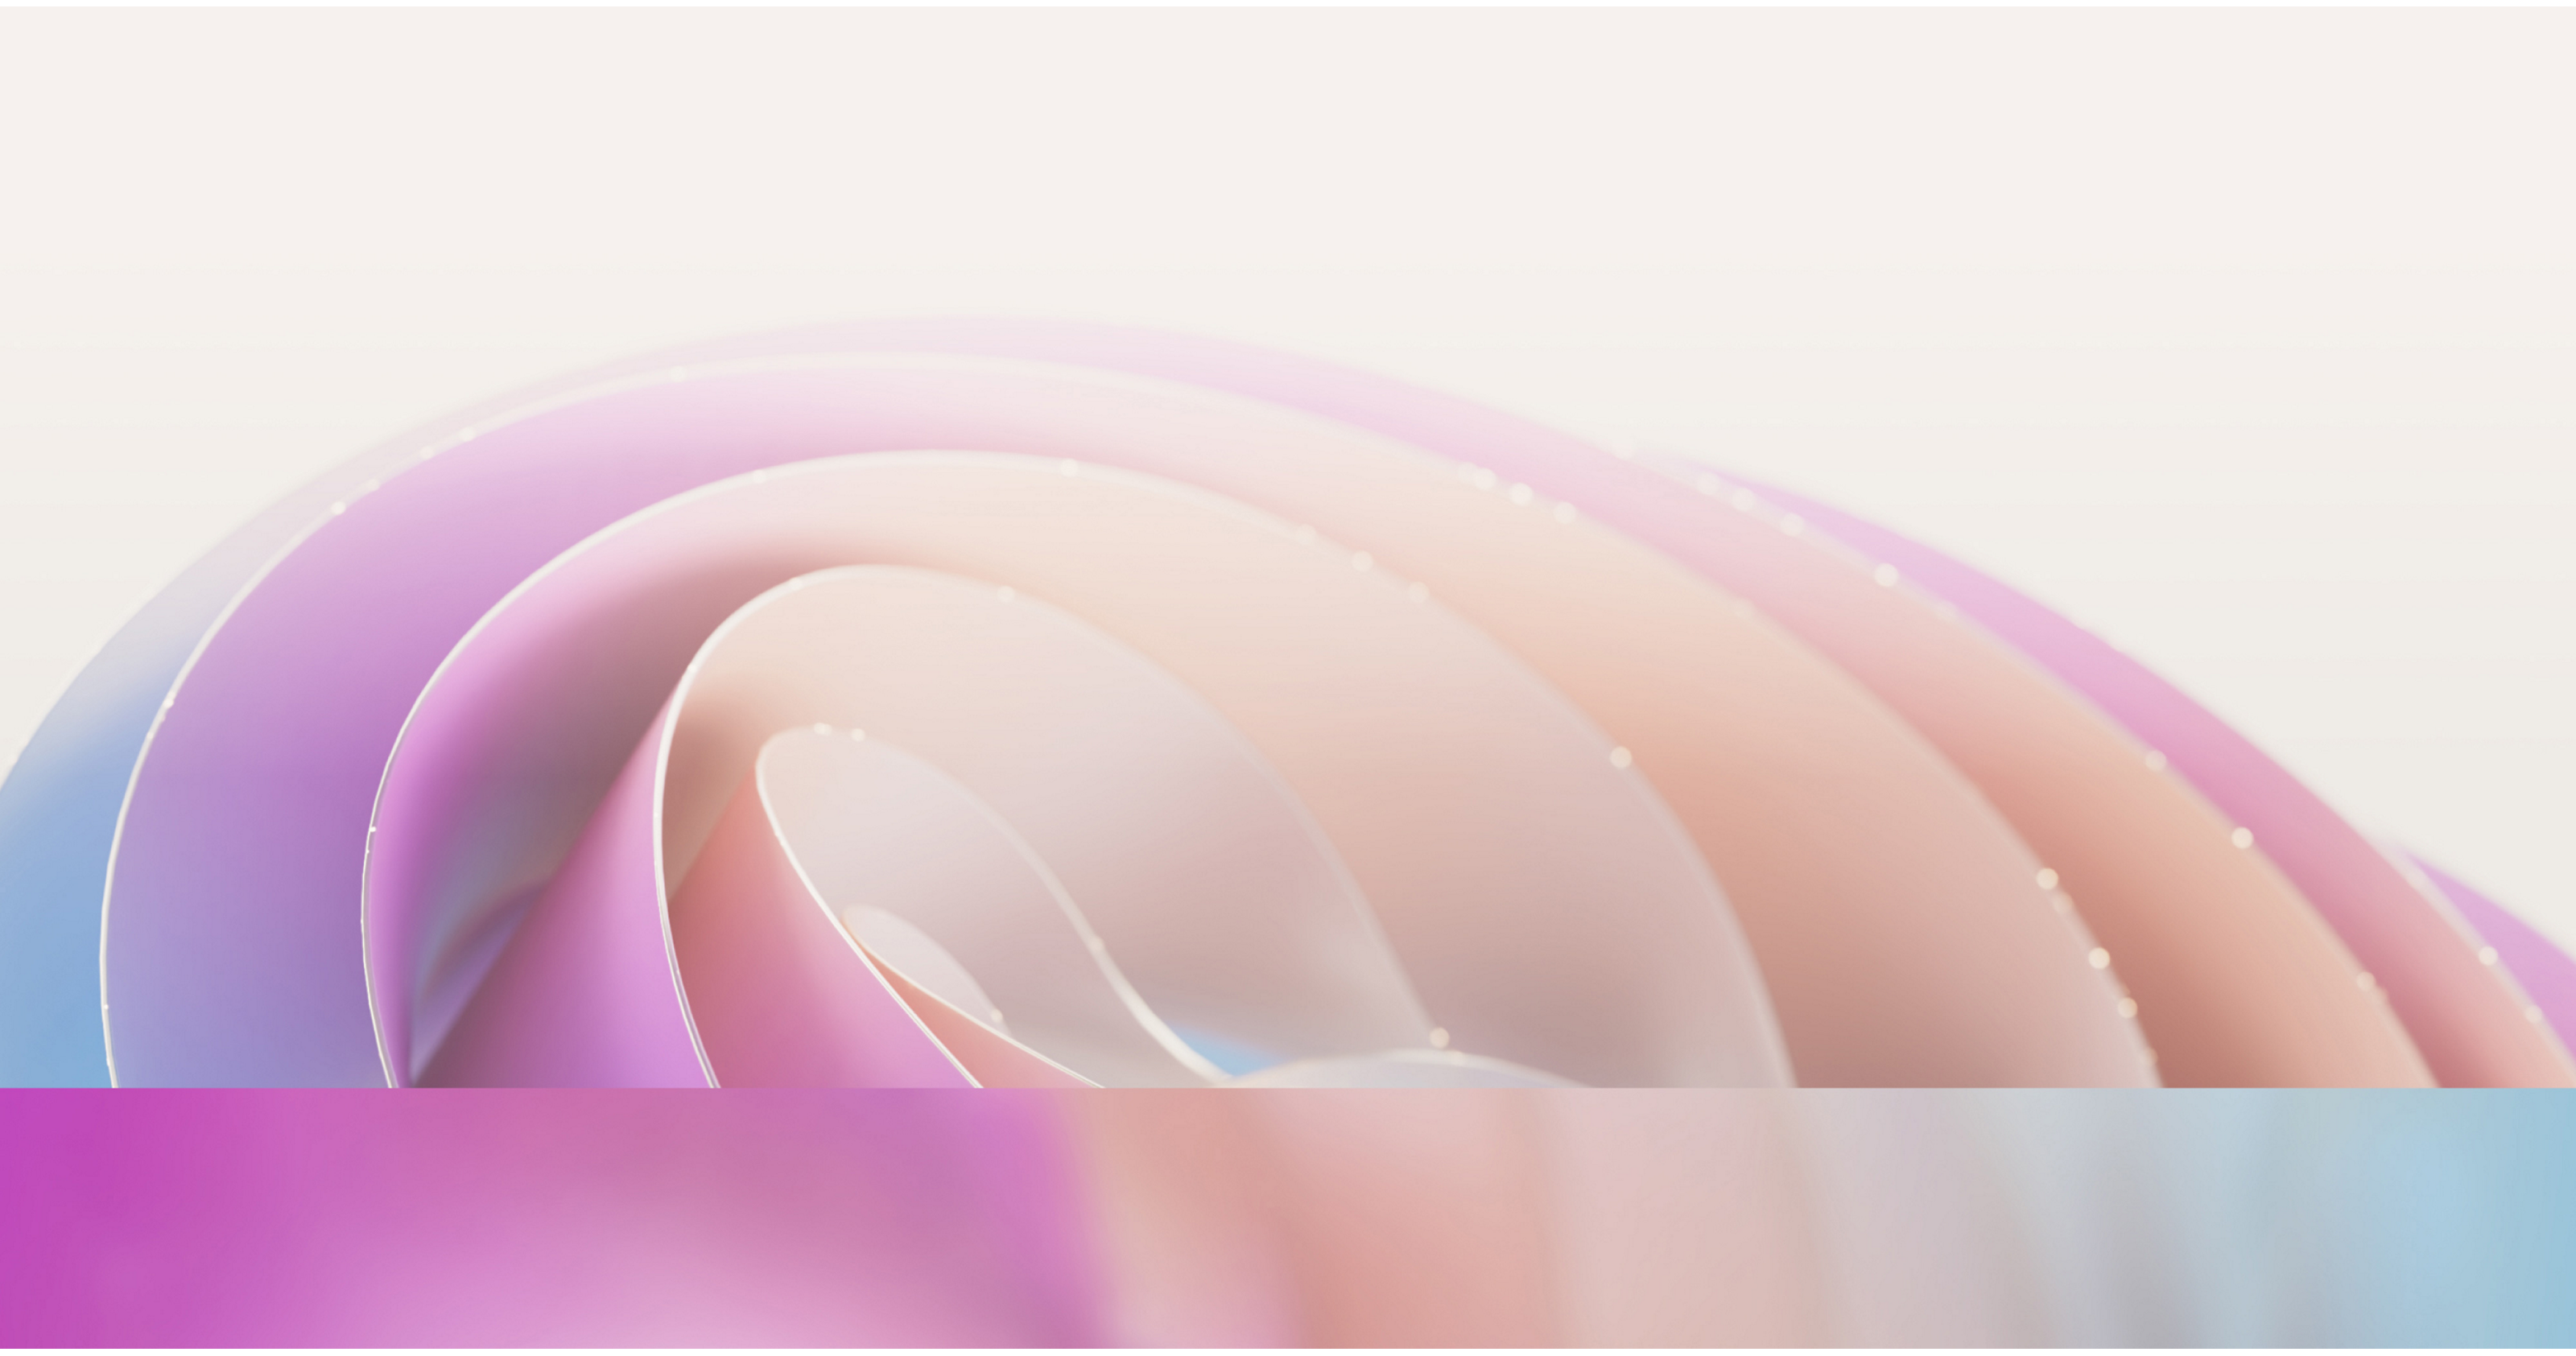 Image abstraite présentant des courbes fluides et douces dans des teintes roses et violettes douces avec un effet discret et diffusant de la lumière.